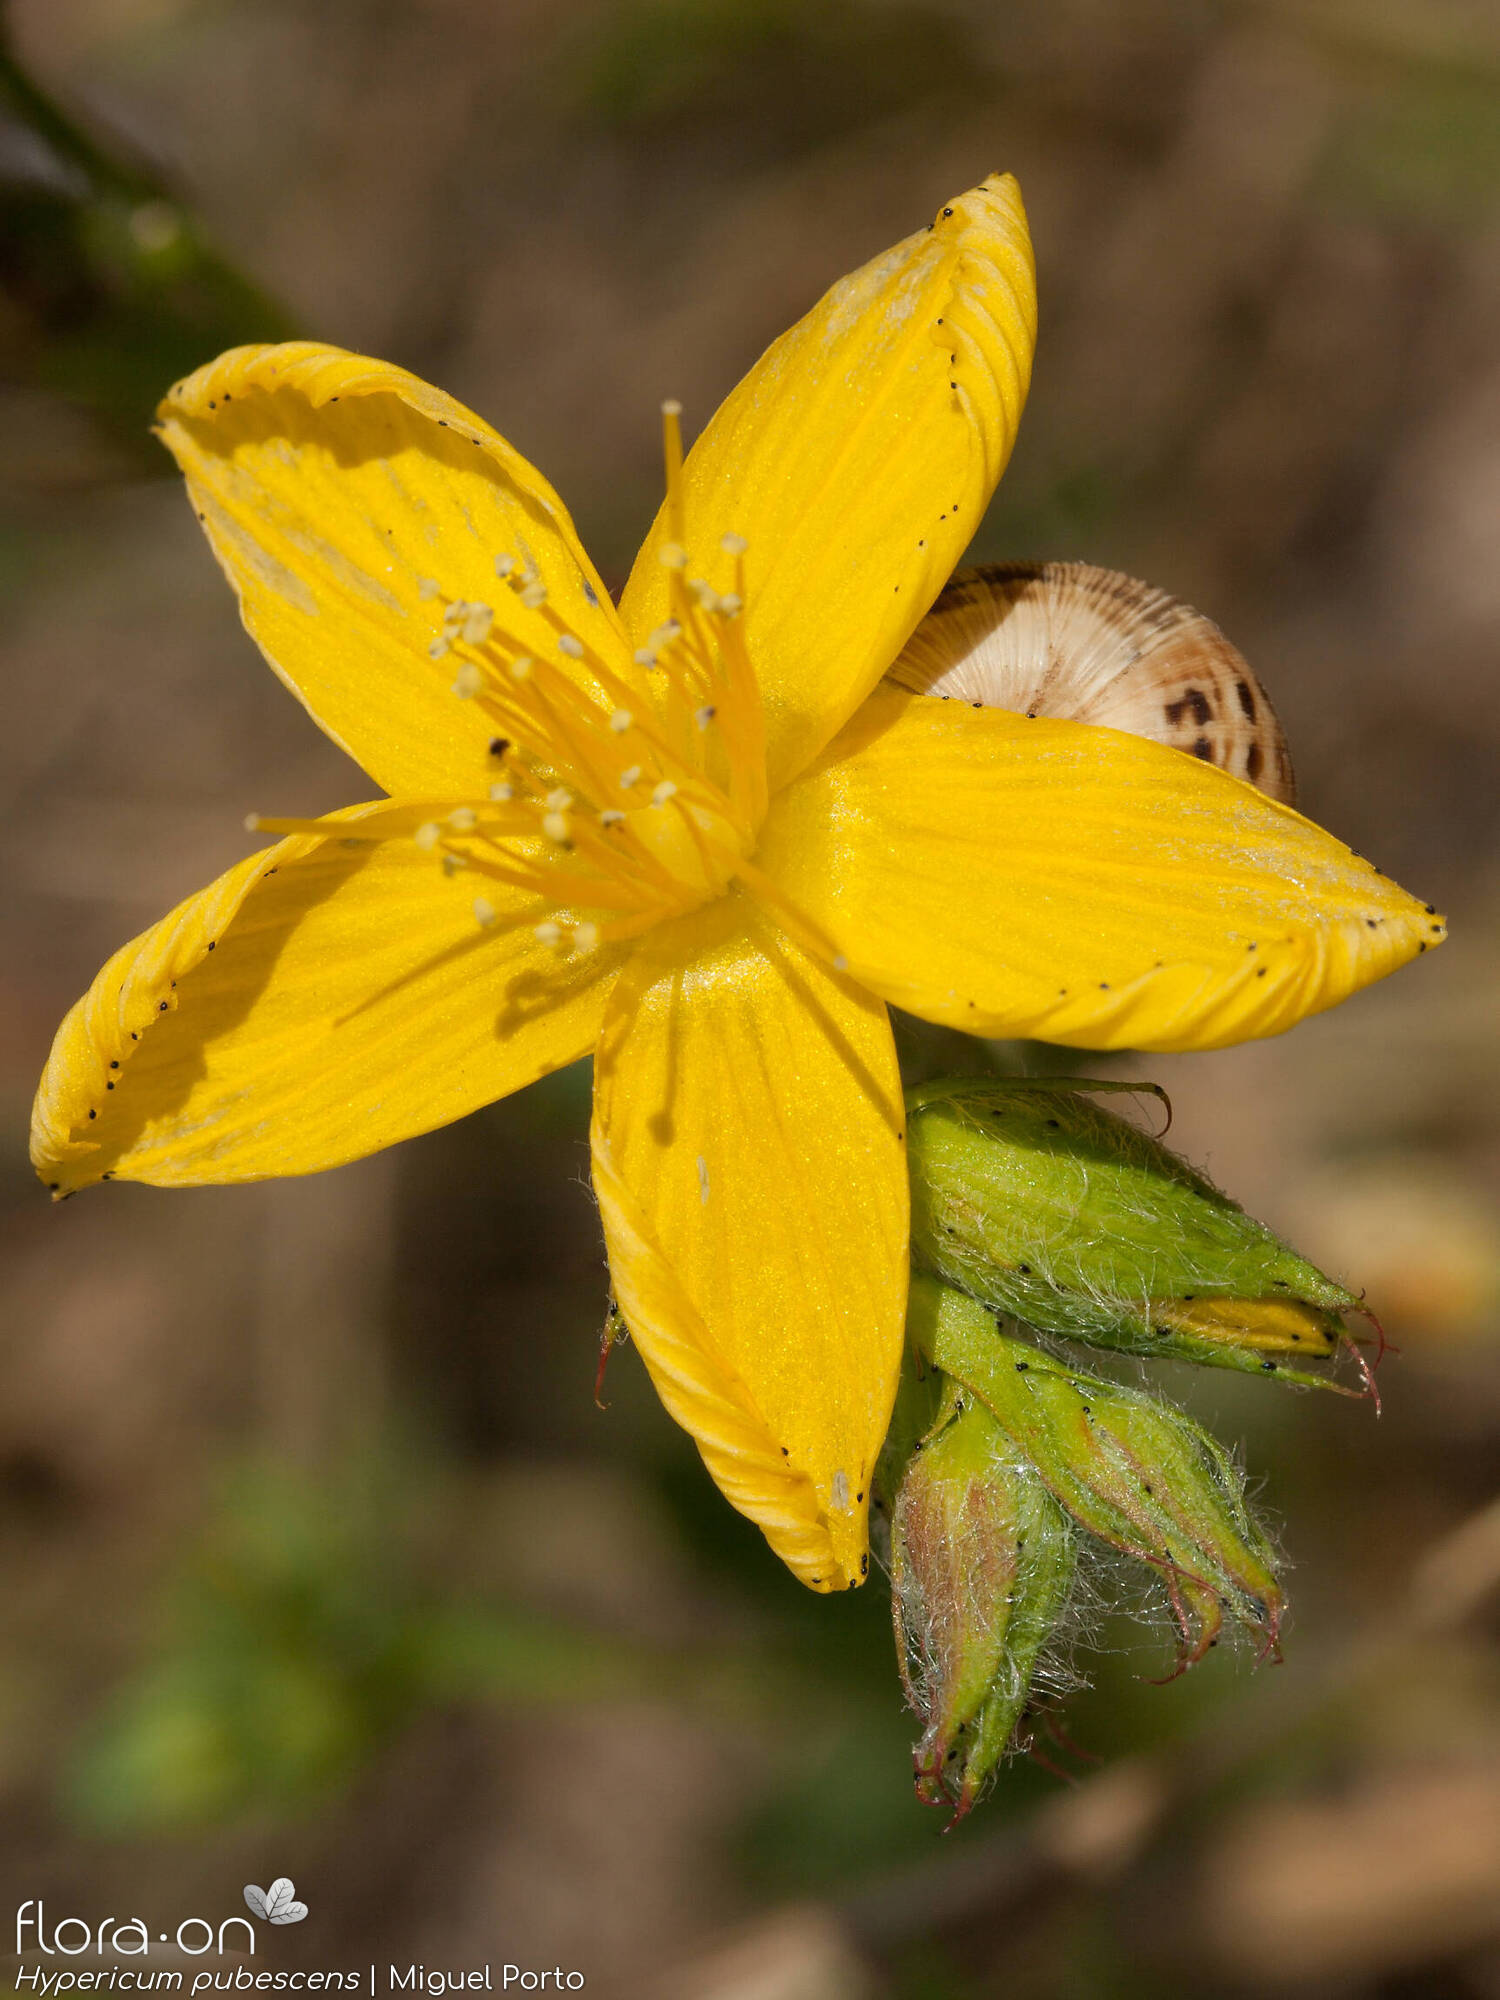 Hypericum pubescens - Flor (close-up) | Miguel Porto; CC BY-NC 4.0